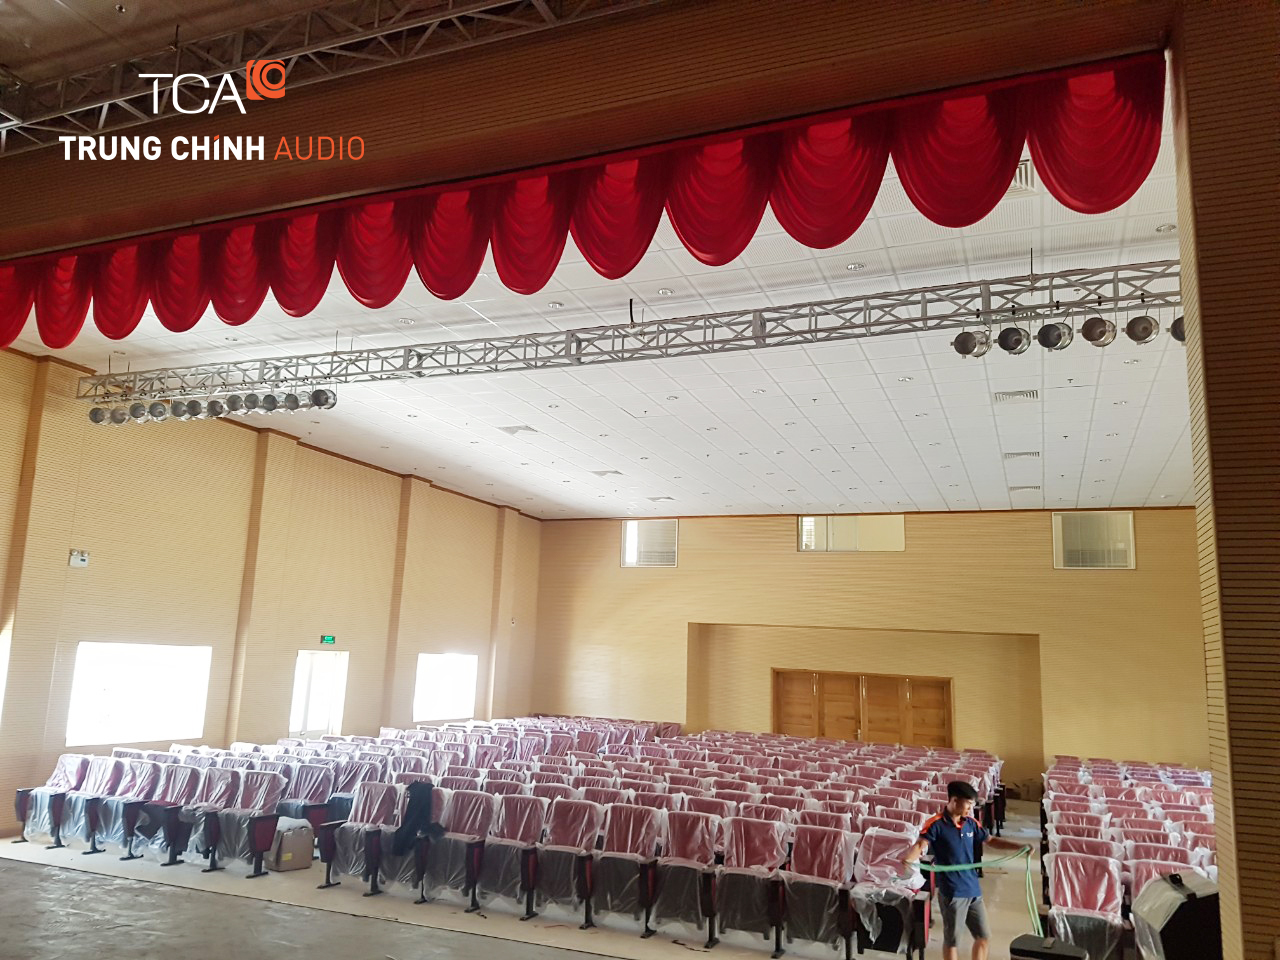 Lắp đặt hệ thống âm thanh ánh sáng dành cho hội trường nhà văn hóa giá rẻ nhất tại Hà Nội